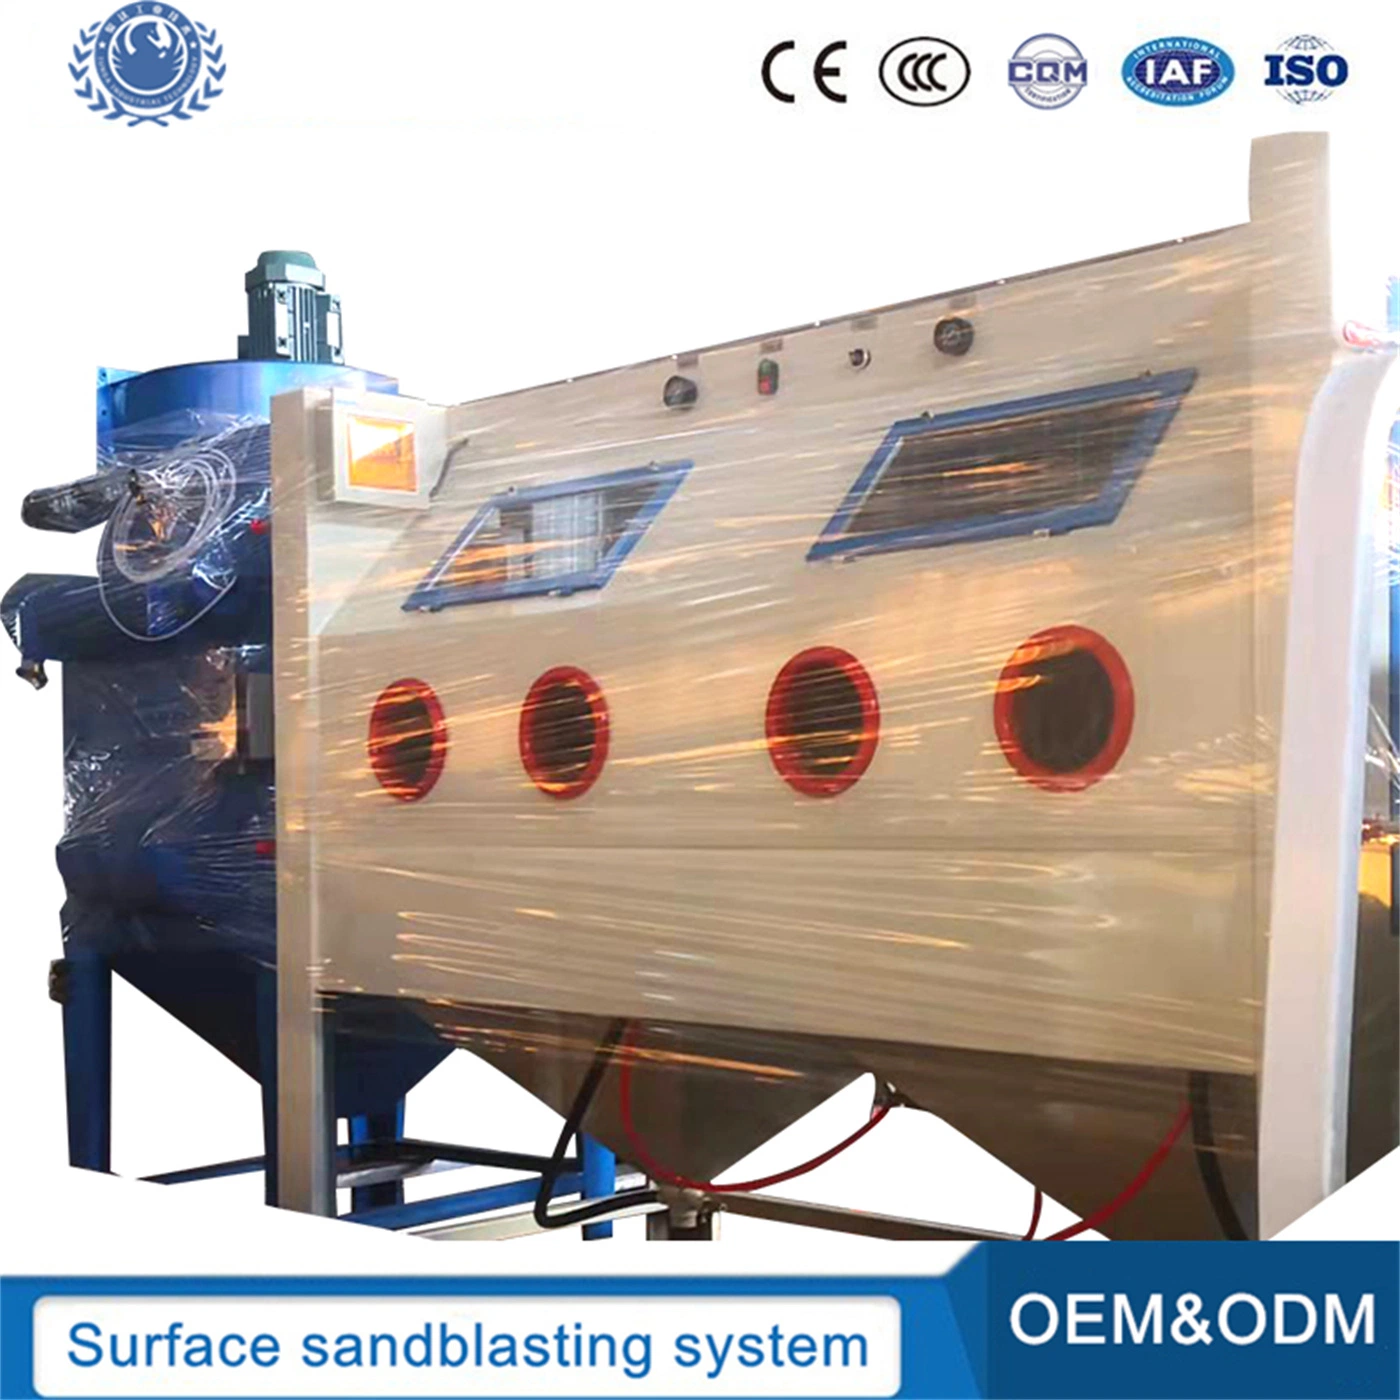 Ventes chaud CE&amp;l'ISO a approuvé le sablage le Cabinet a fait en Chine